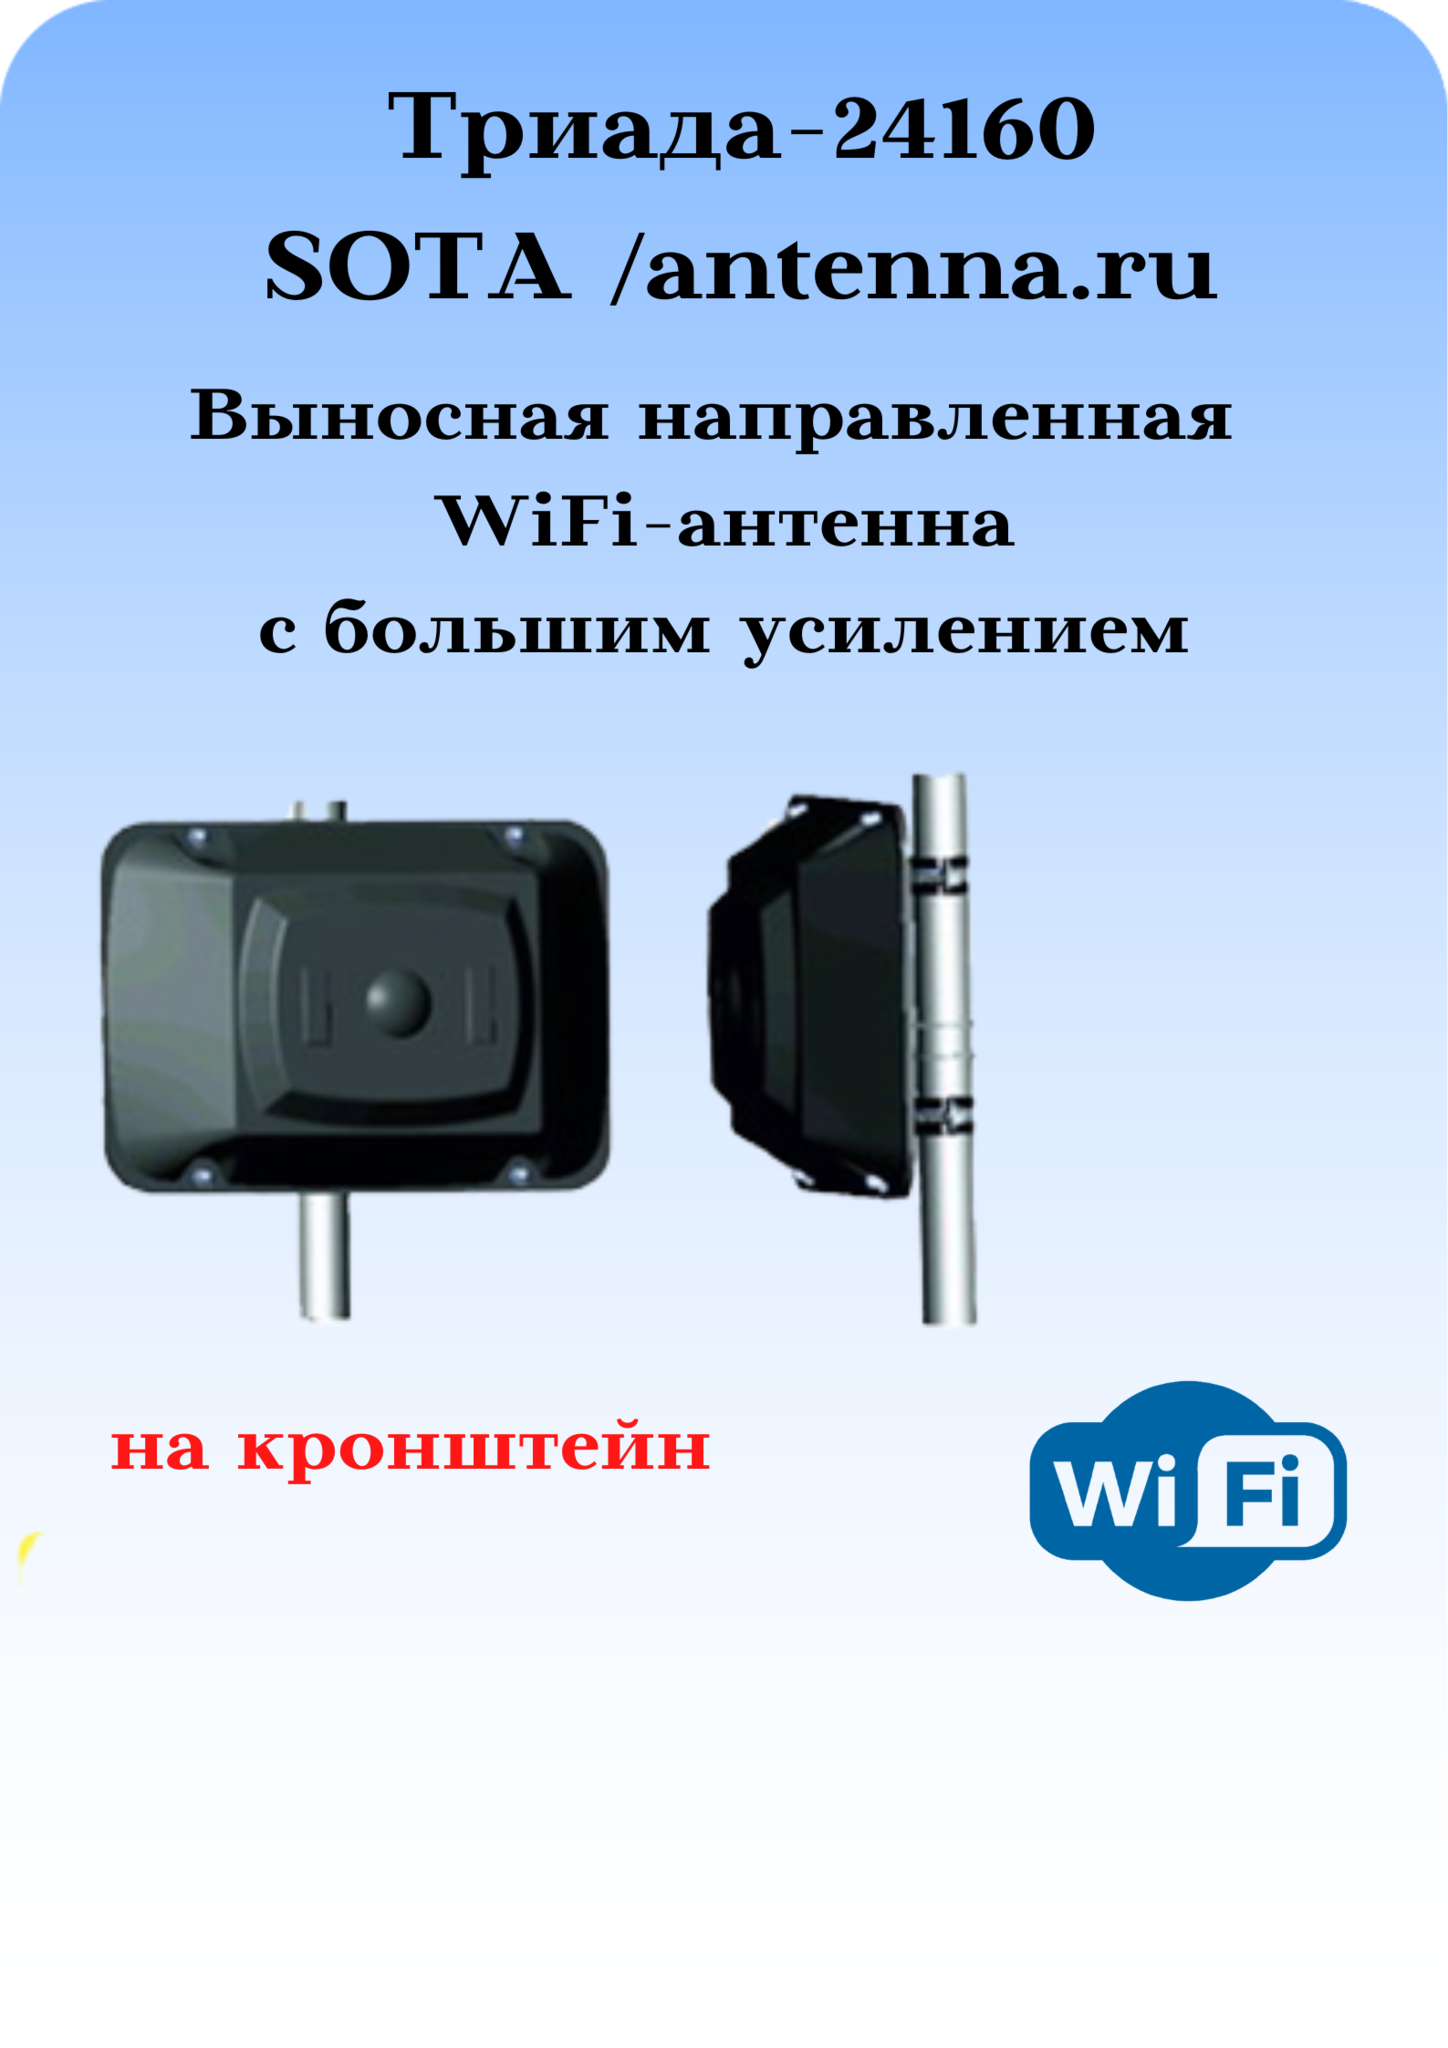 Купить Направленная 18 дБ WiFi антенна 6 ГГц KP в интернет-магазине натяжныепотолкибрянск.рф